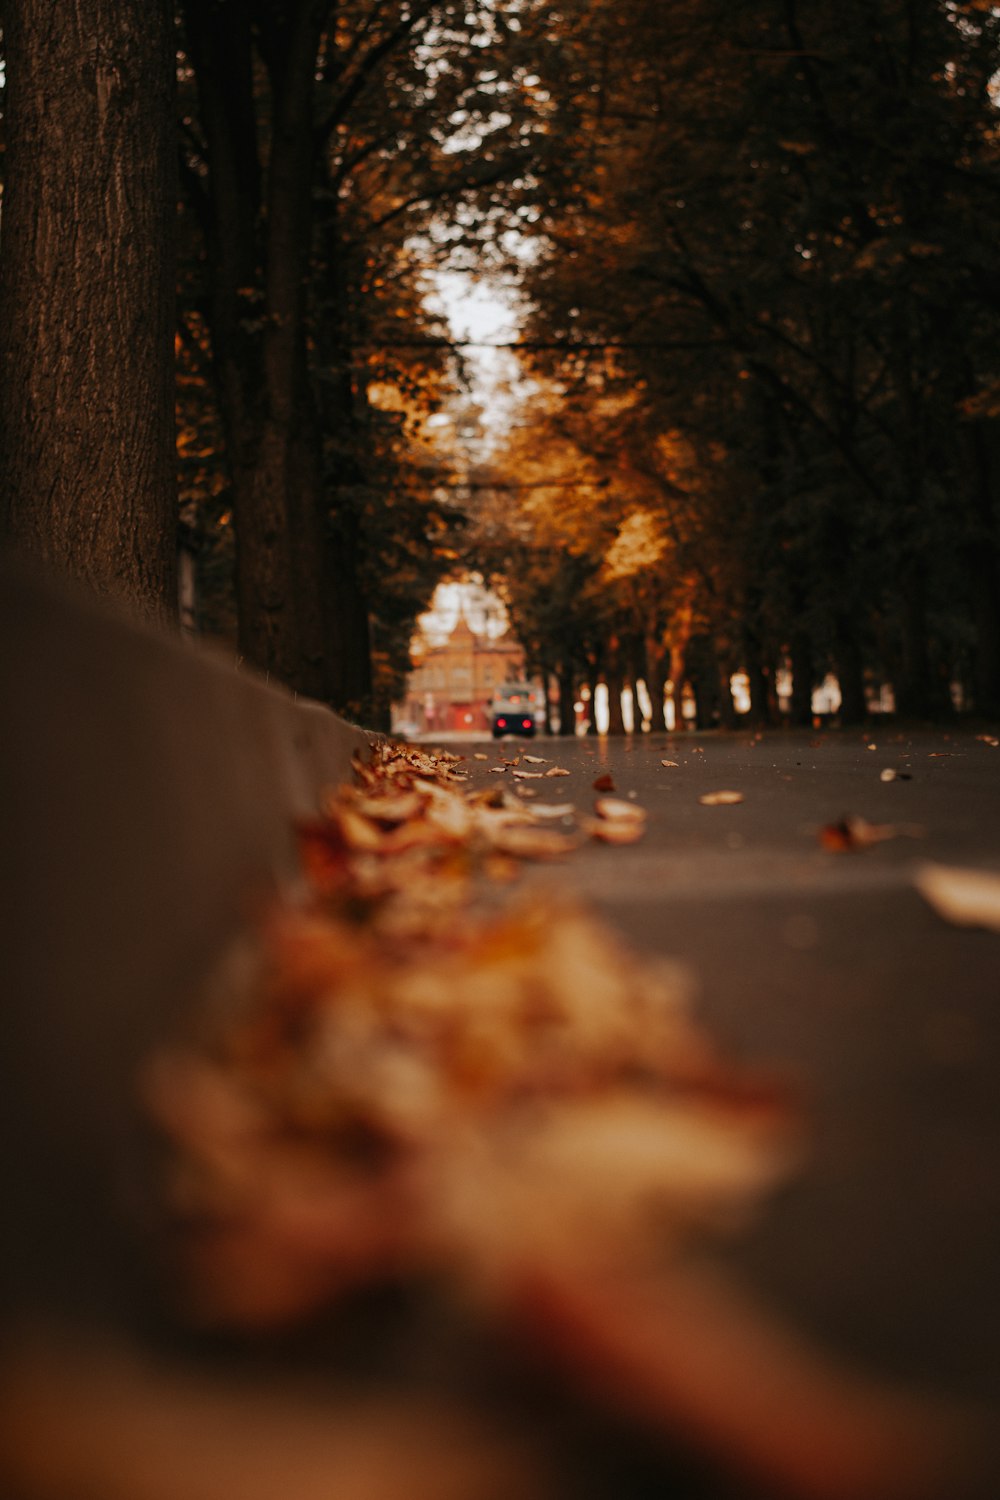 brown leaves on black asphalt road during daytime